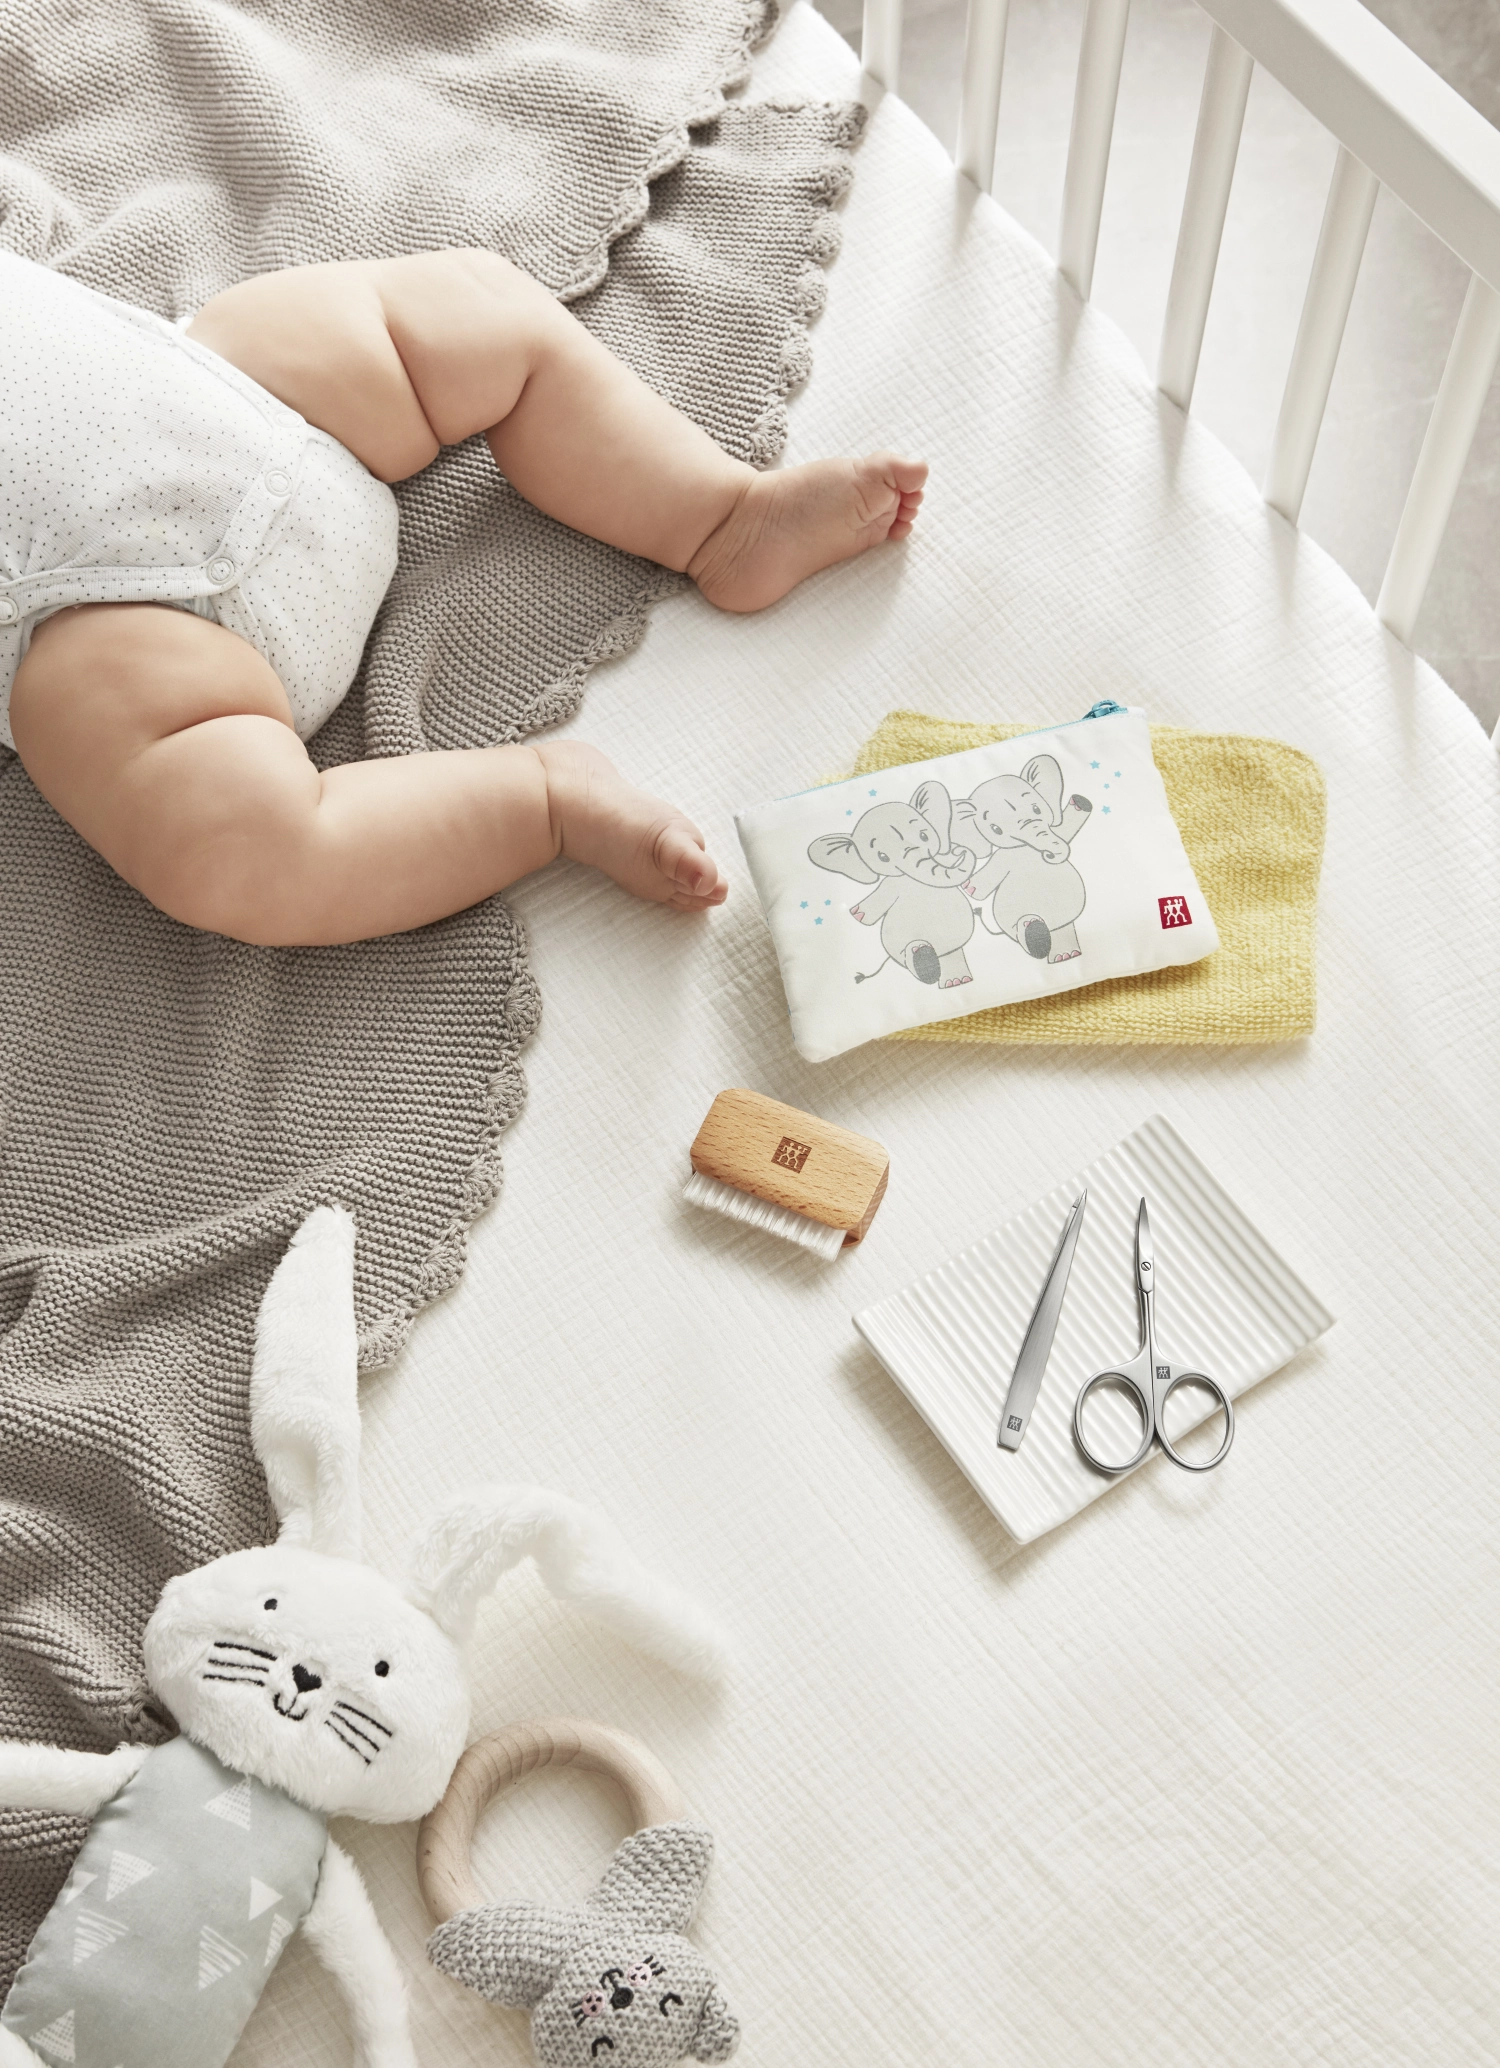 Twinox set de soin des ongles pour bébés et enfants, 3pcs.